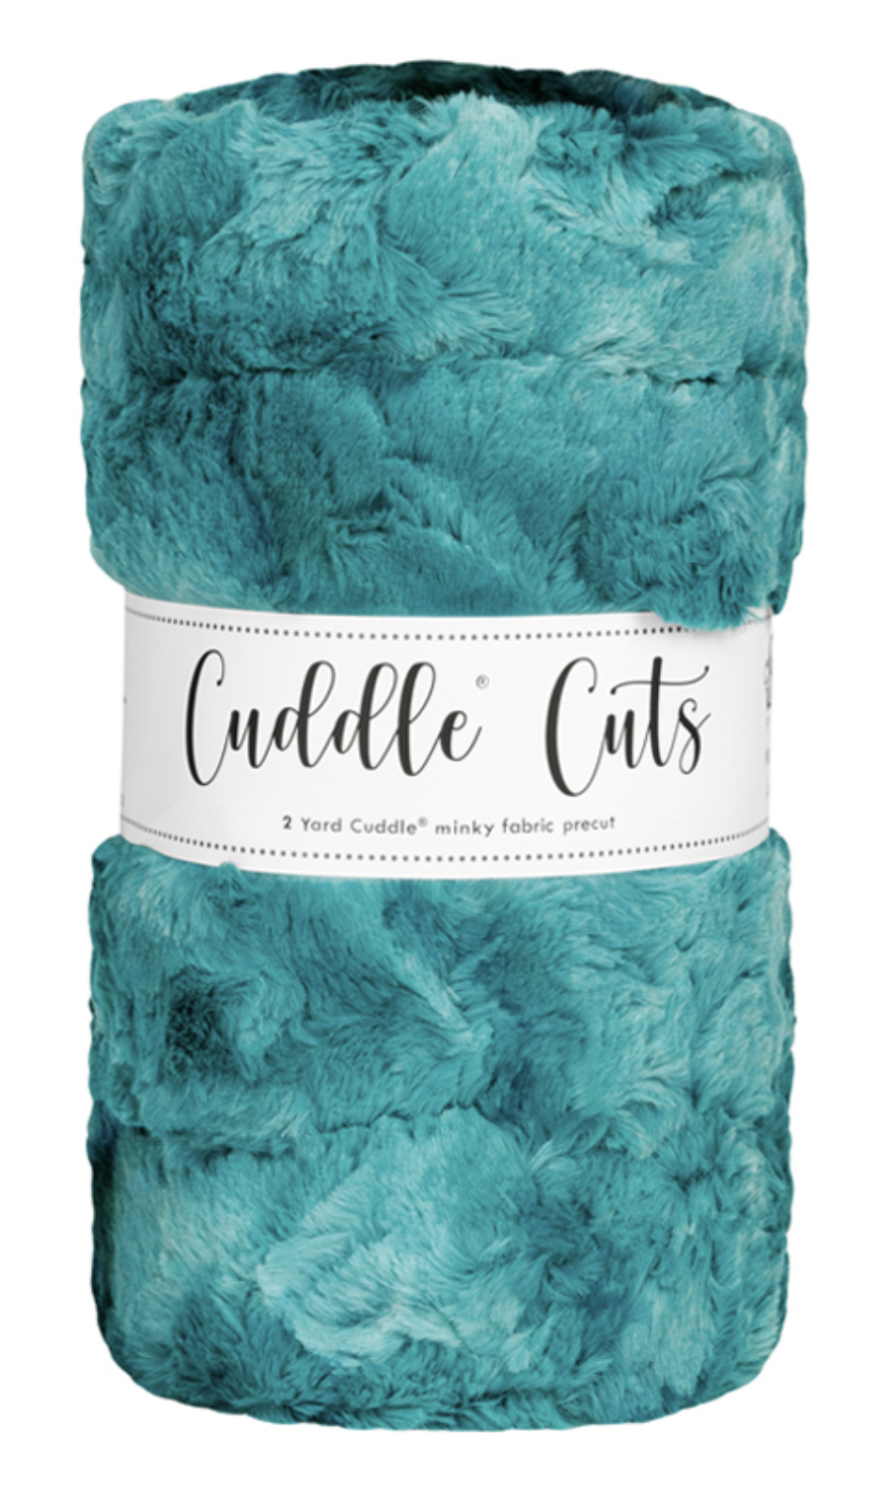 2 Yard Luxe Cuddle Cut - GALAXY MALLARD by Shannon Fabrics